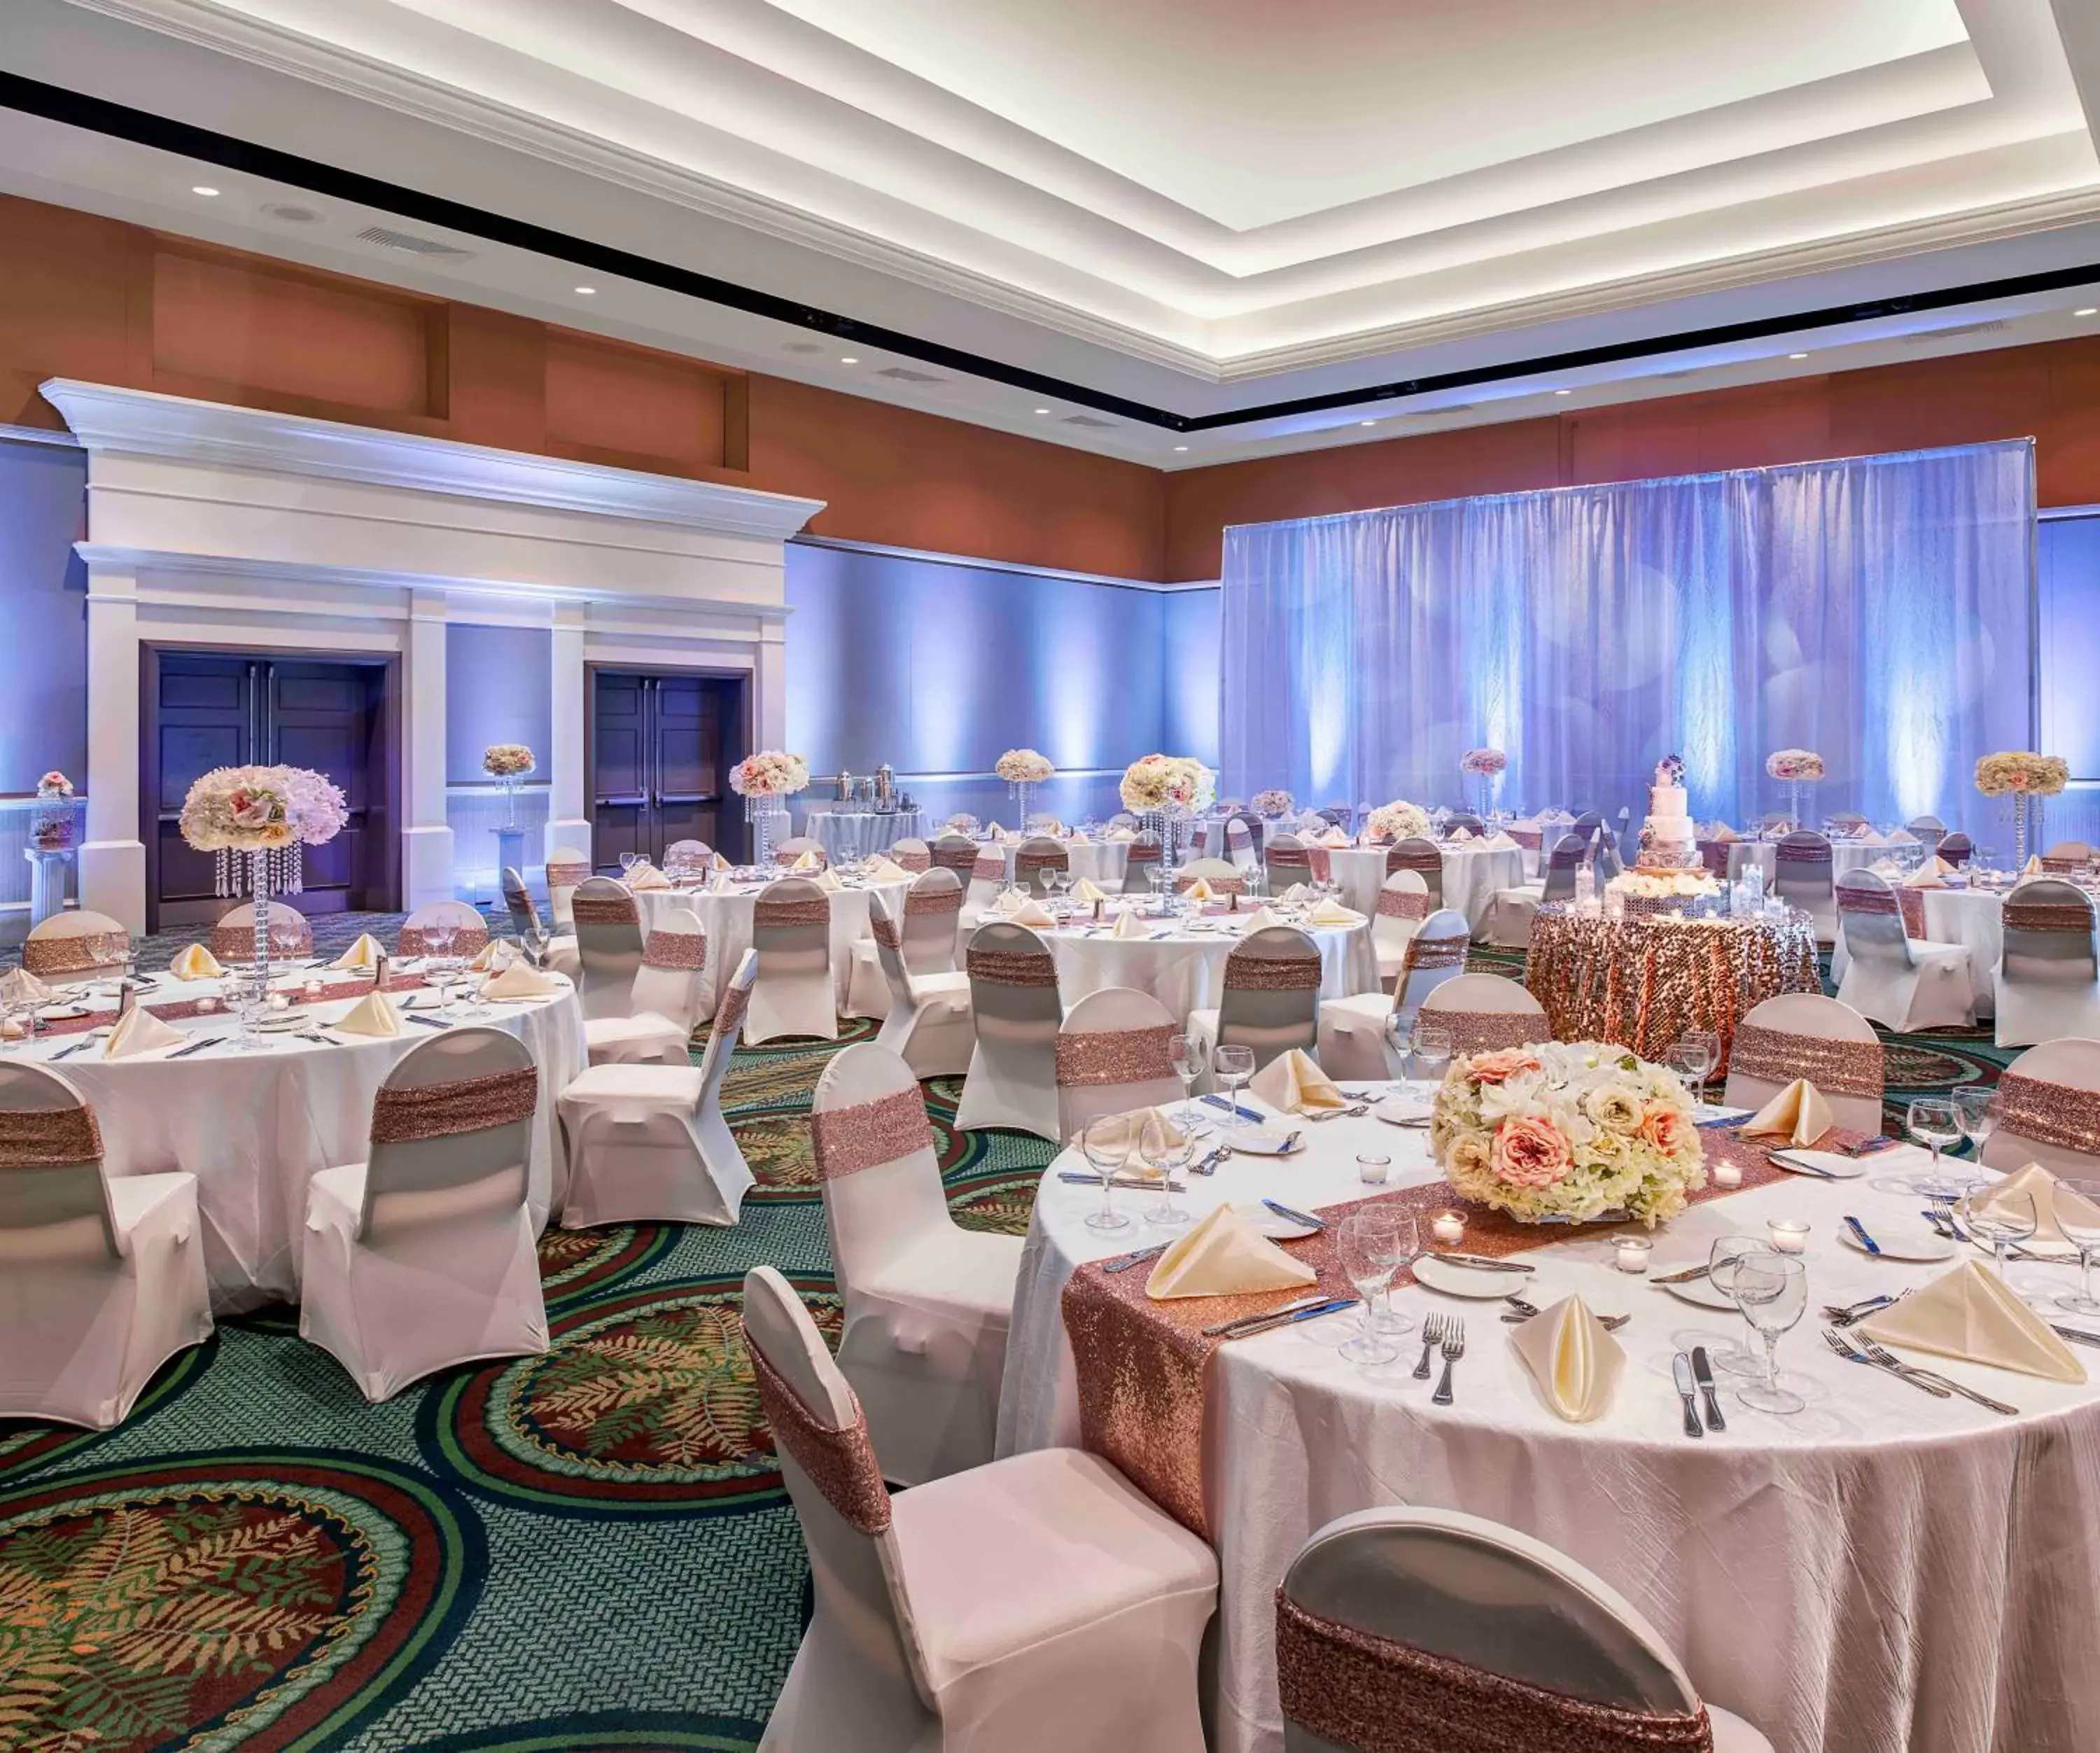 Banquet/Function facilities, Banquet Facilities in Caribe Royale Orlando